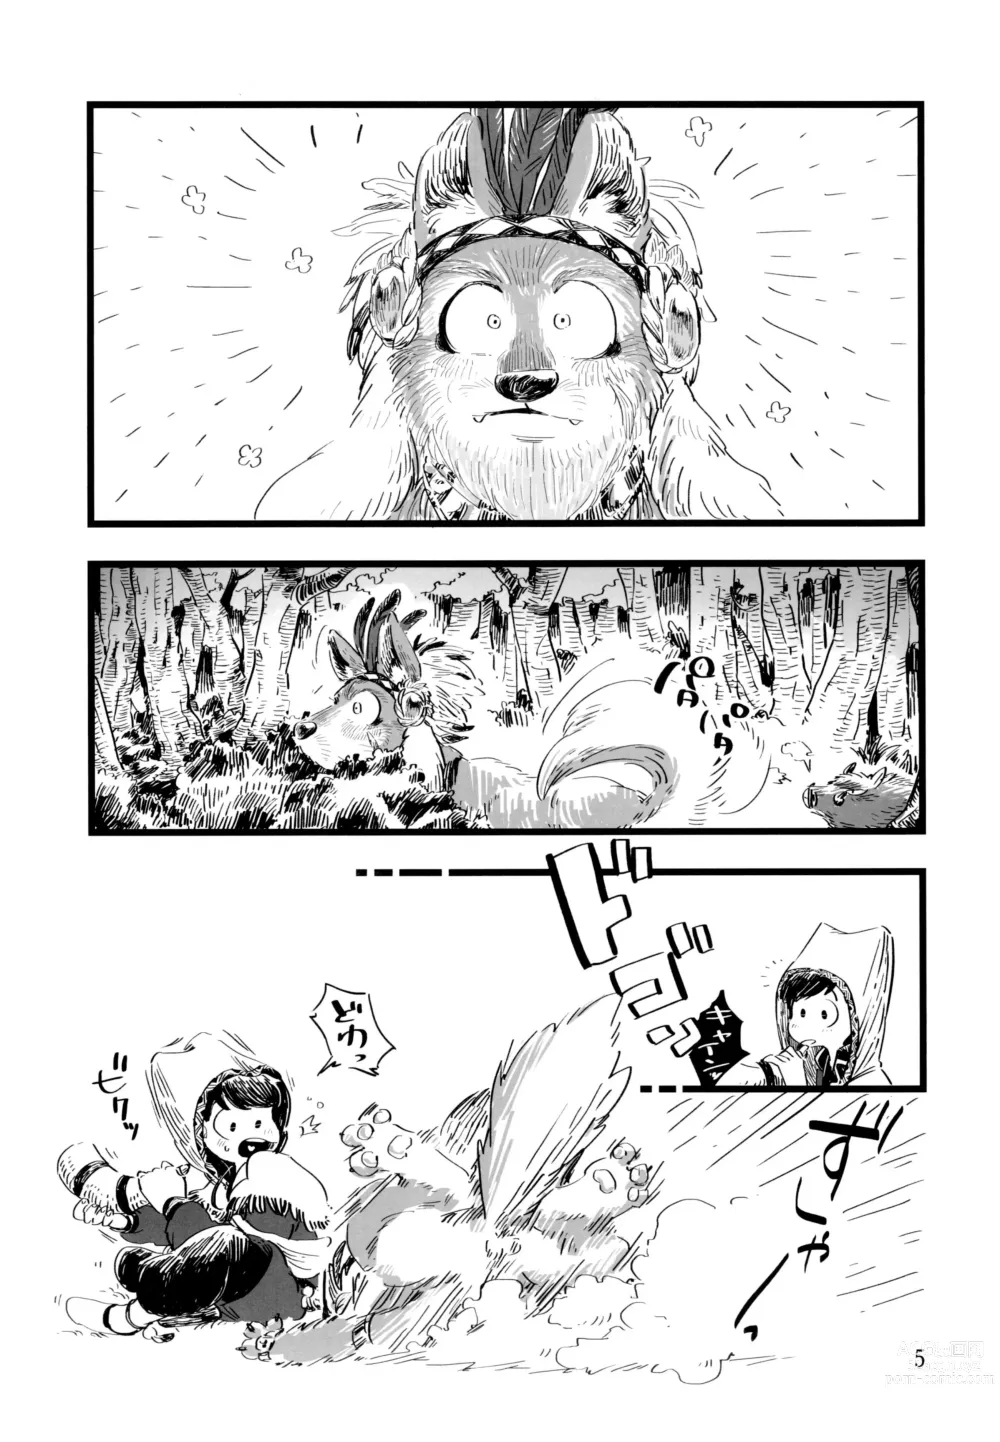 Page 5 of doujinshi Jinro and Tsuno Minzoku